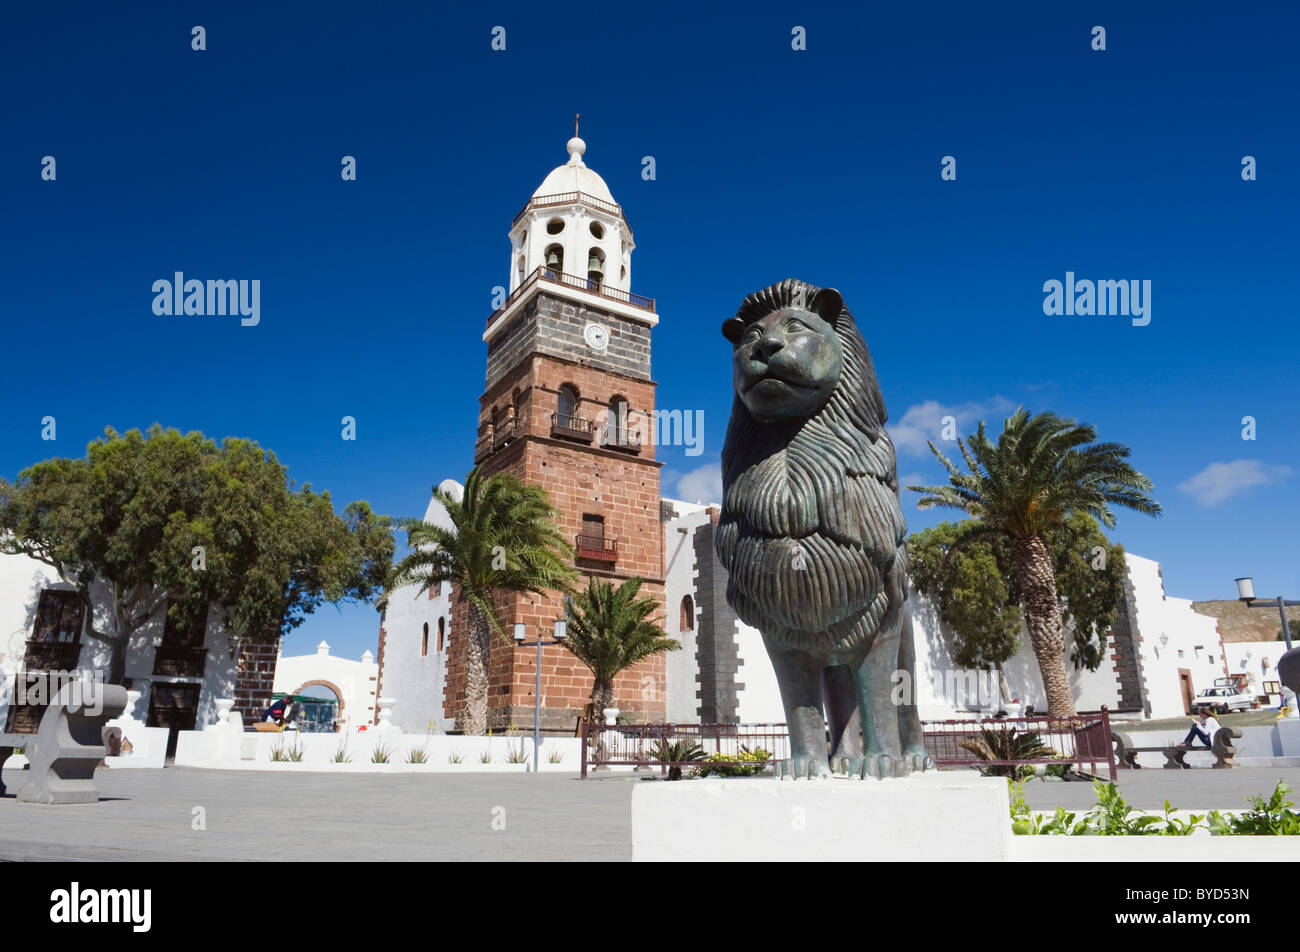 La place principale et l'église de Nuestra Señora de Guadalupe, Teguise, Lanzarote, Canary Islands, Spain, Europe Banque D'Images